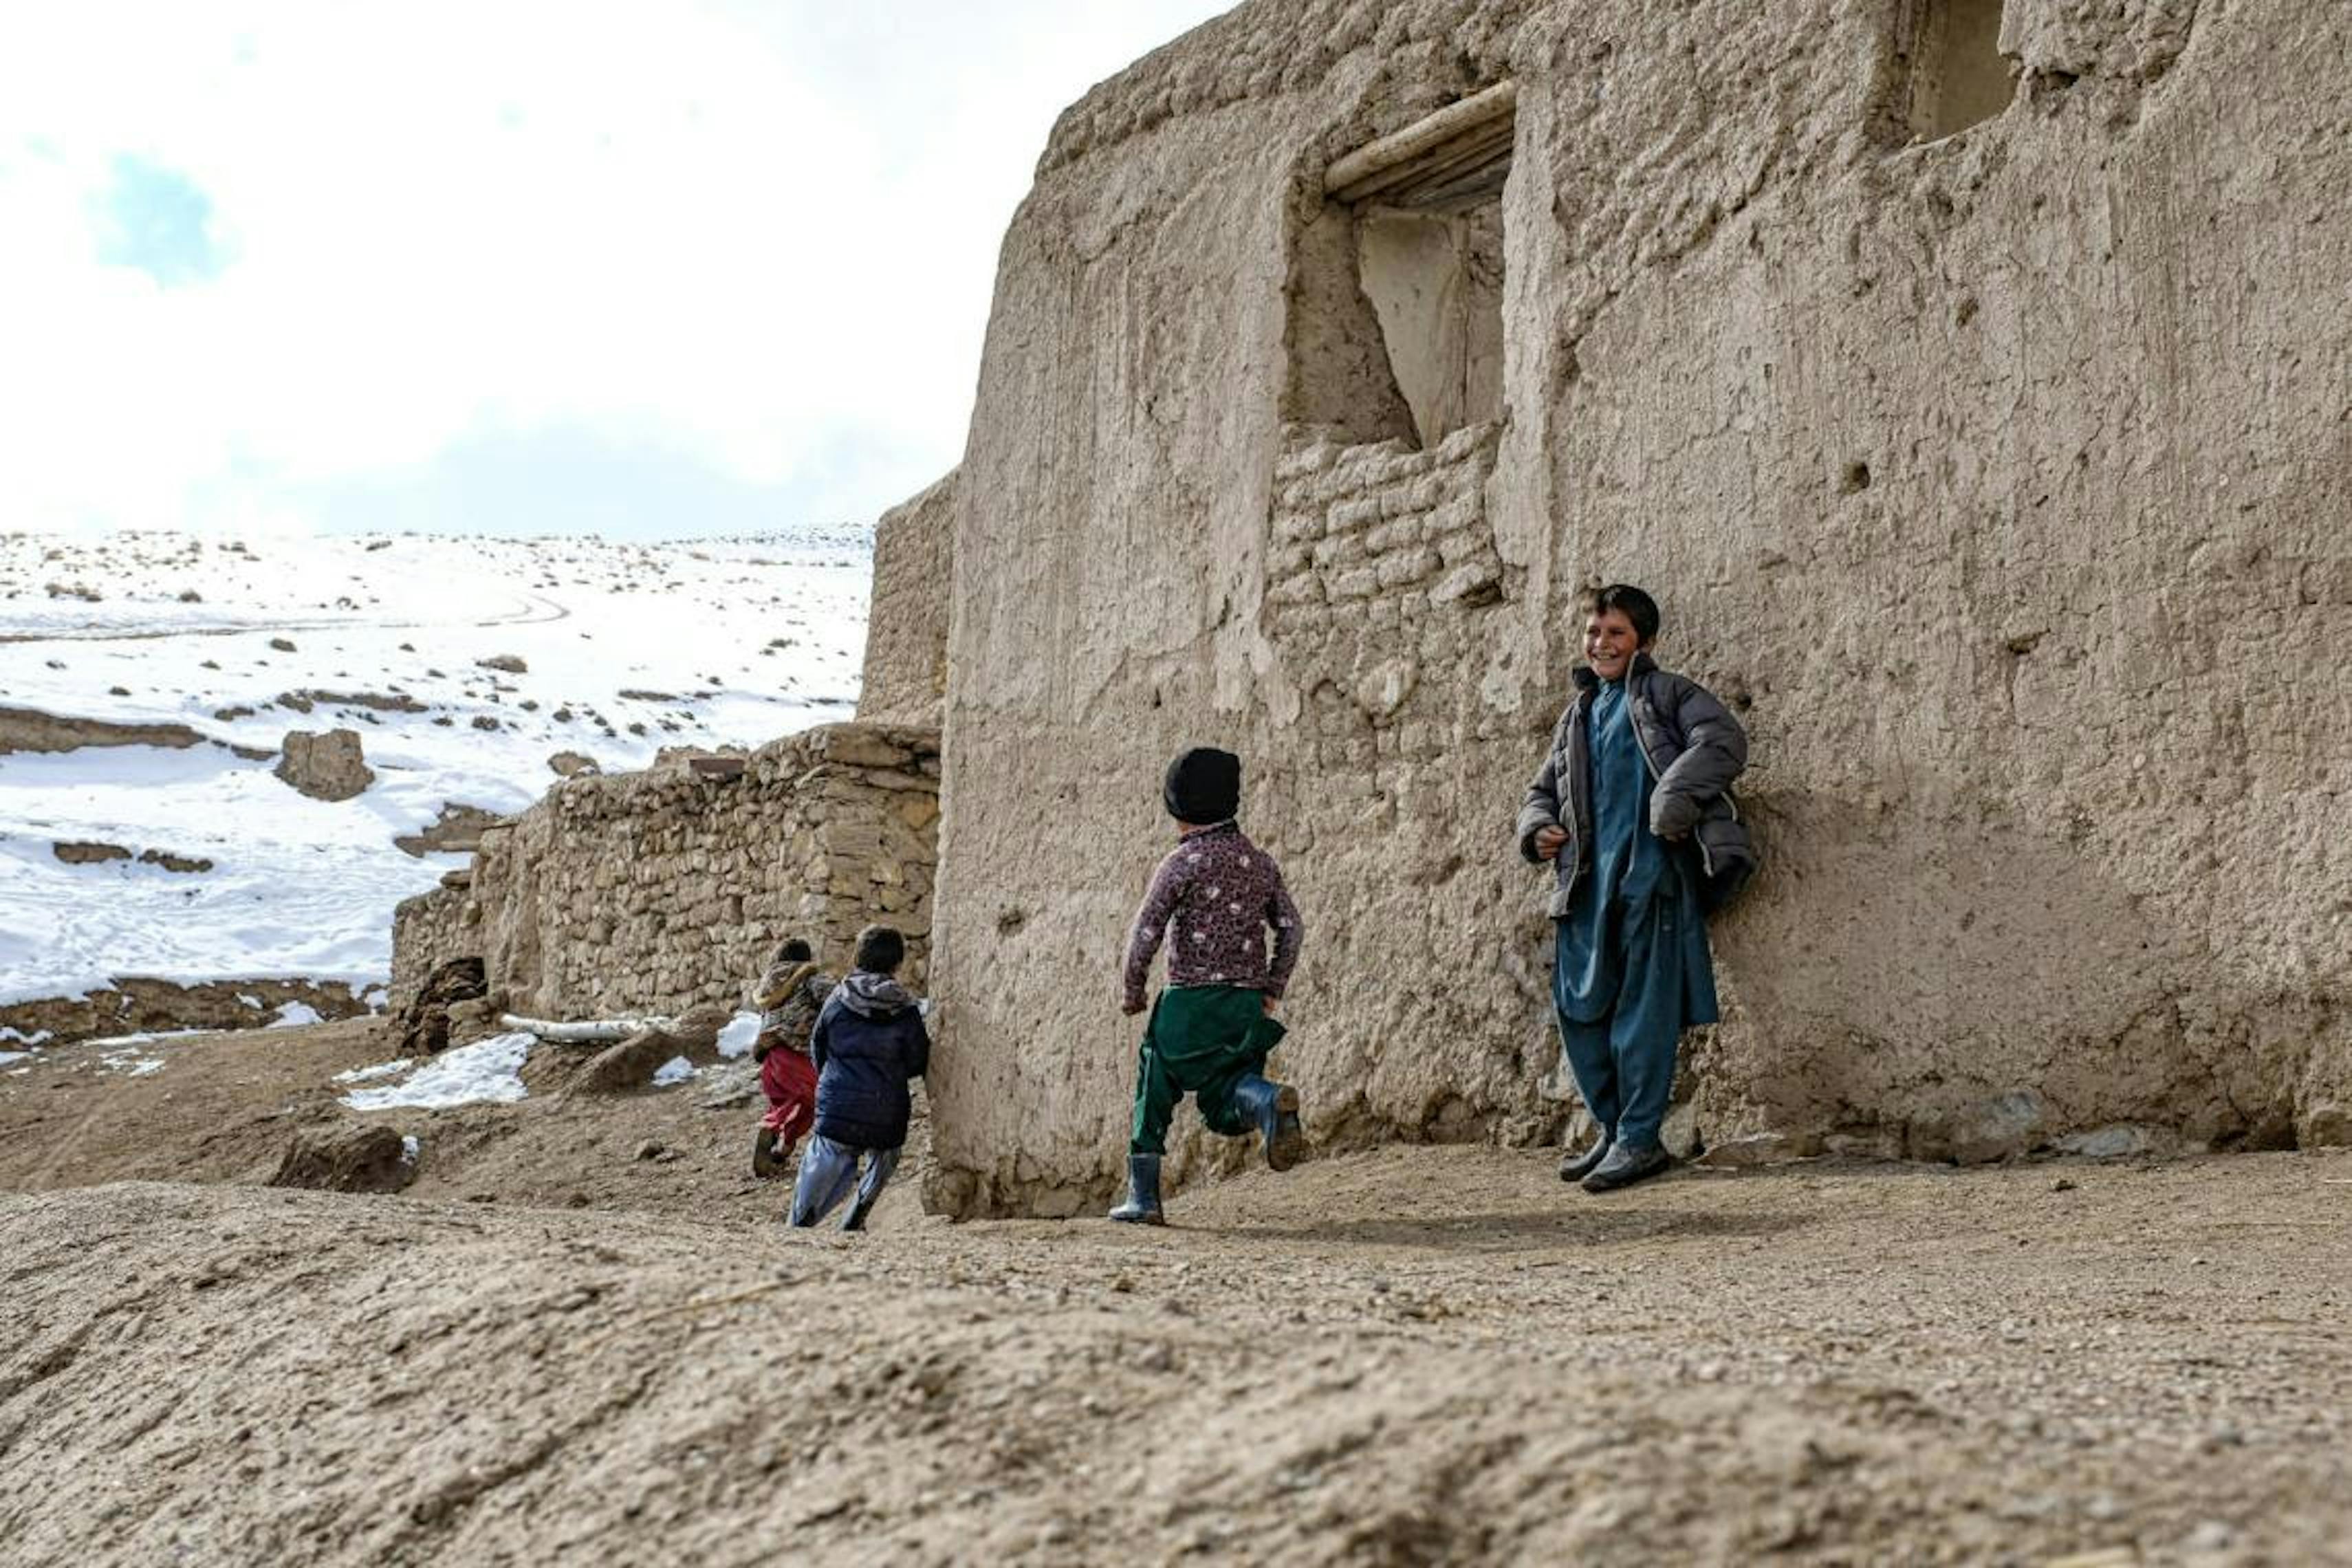 Bambini che giocano nel villaggio di Joyaab nel distretto di Chagcharan nella provincia di Ghor. Il villaggio si trova a tre ore di auto dalla capitale Firozkoh e rimane inaccessibile durante l'inverno.